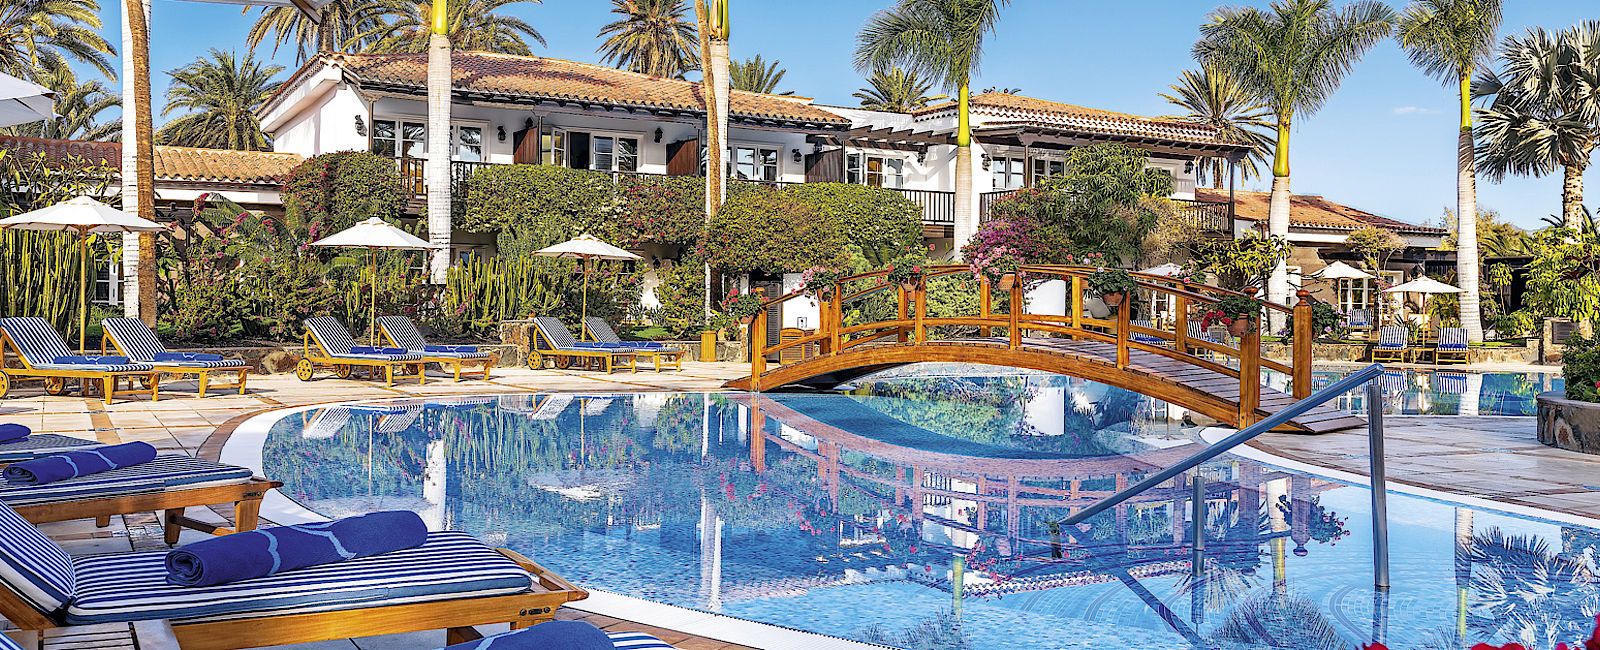 VERY SPECIAL HOTEL
 Seaside Grand Hotel Residencia 
 Rückzug in eine Welt der Ruhe 